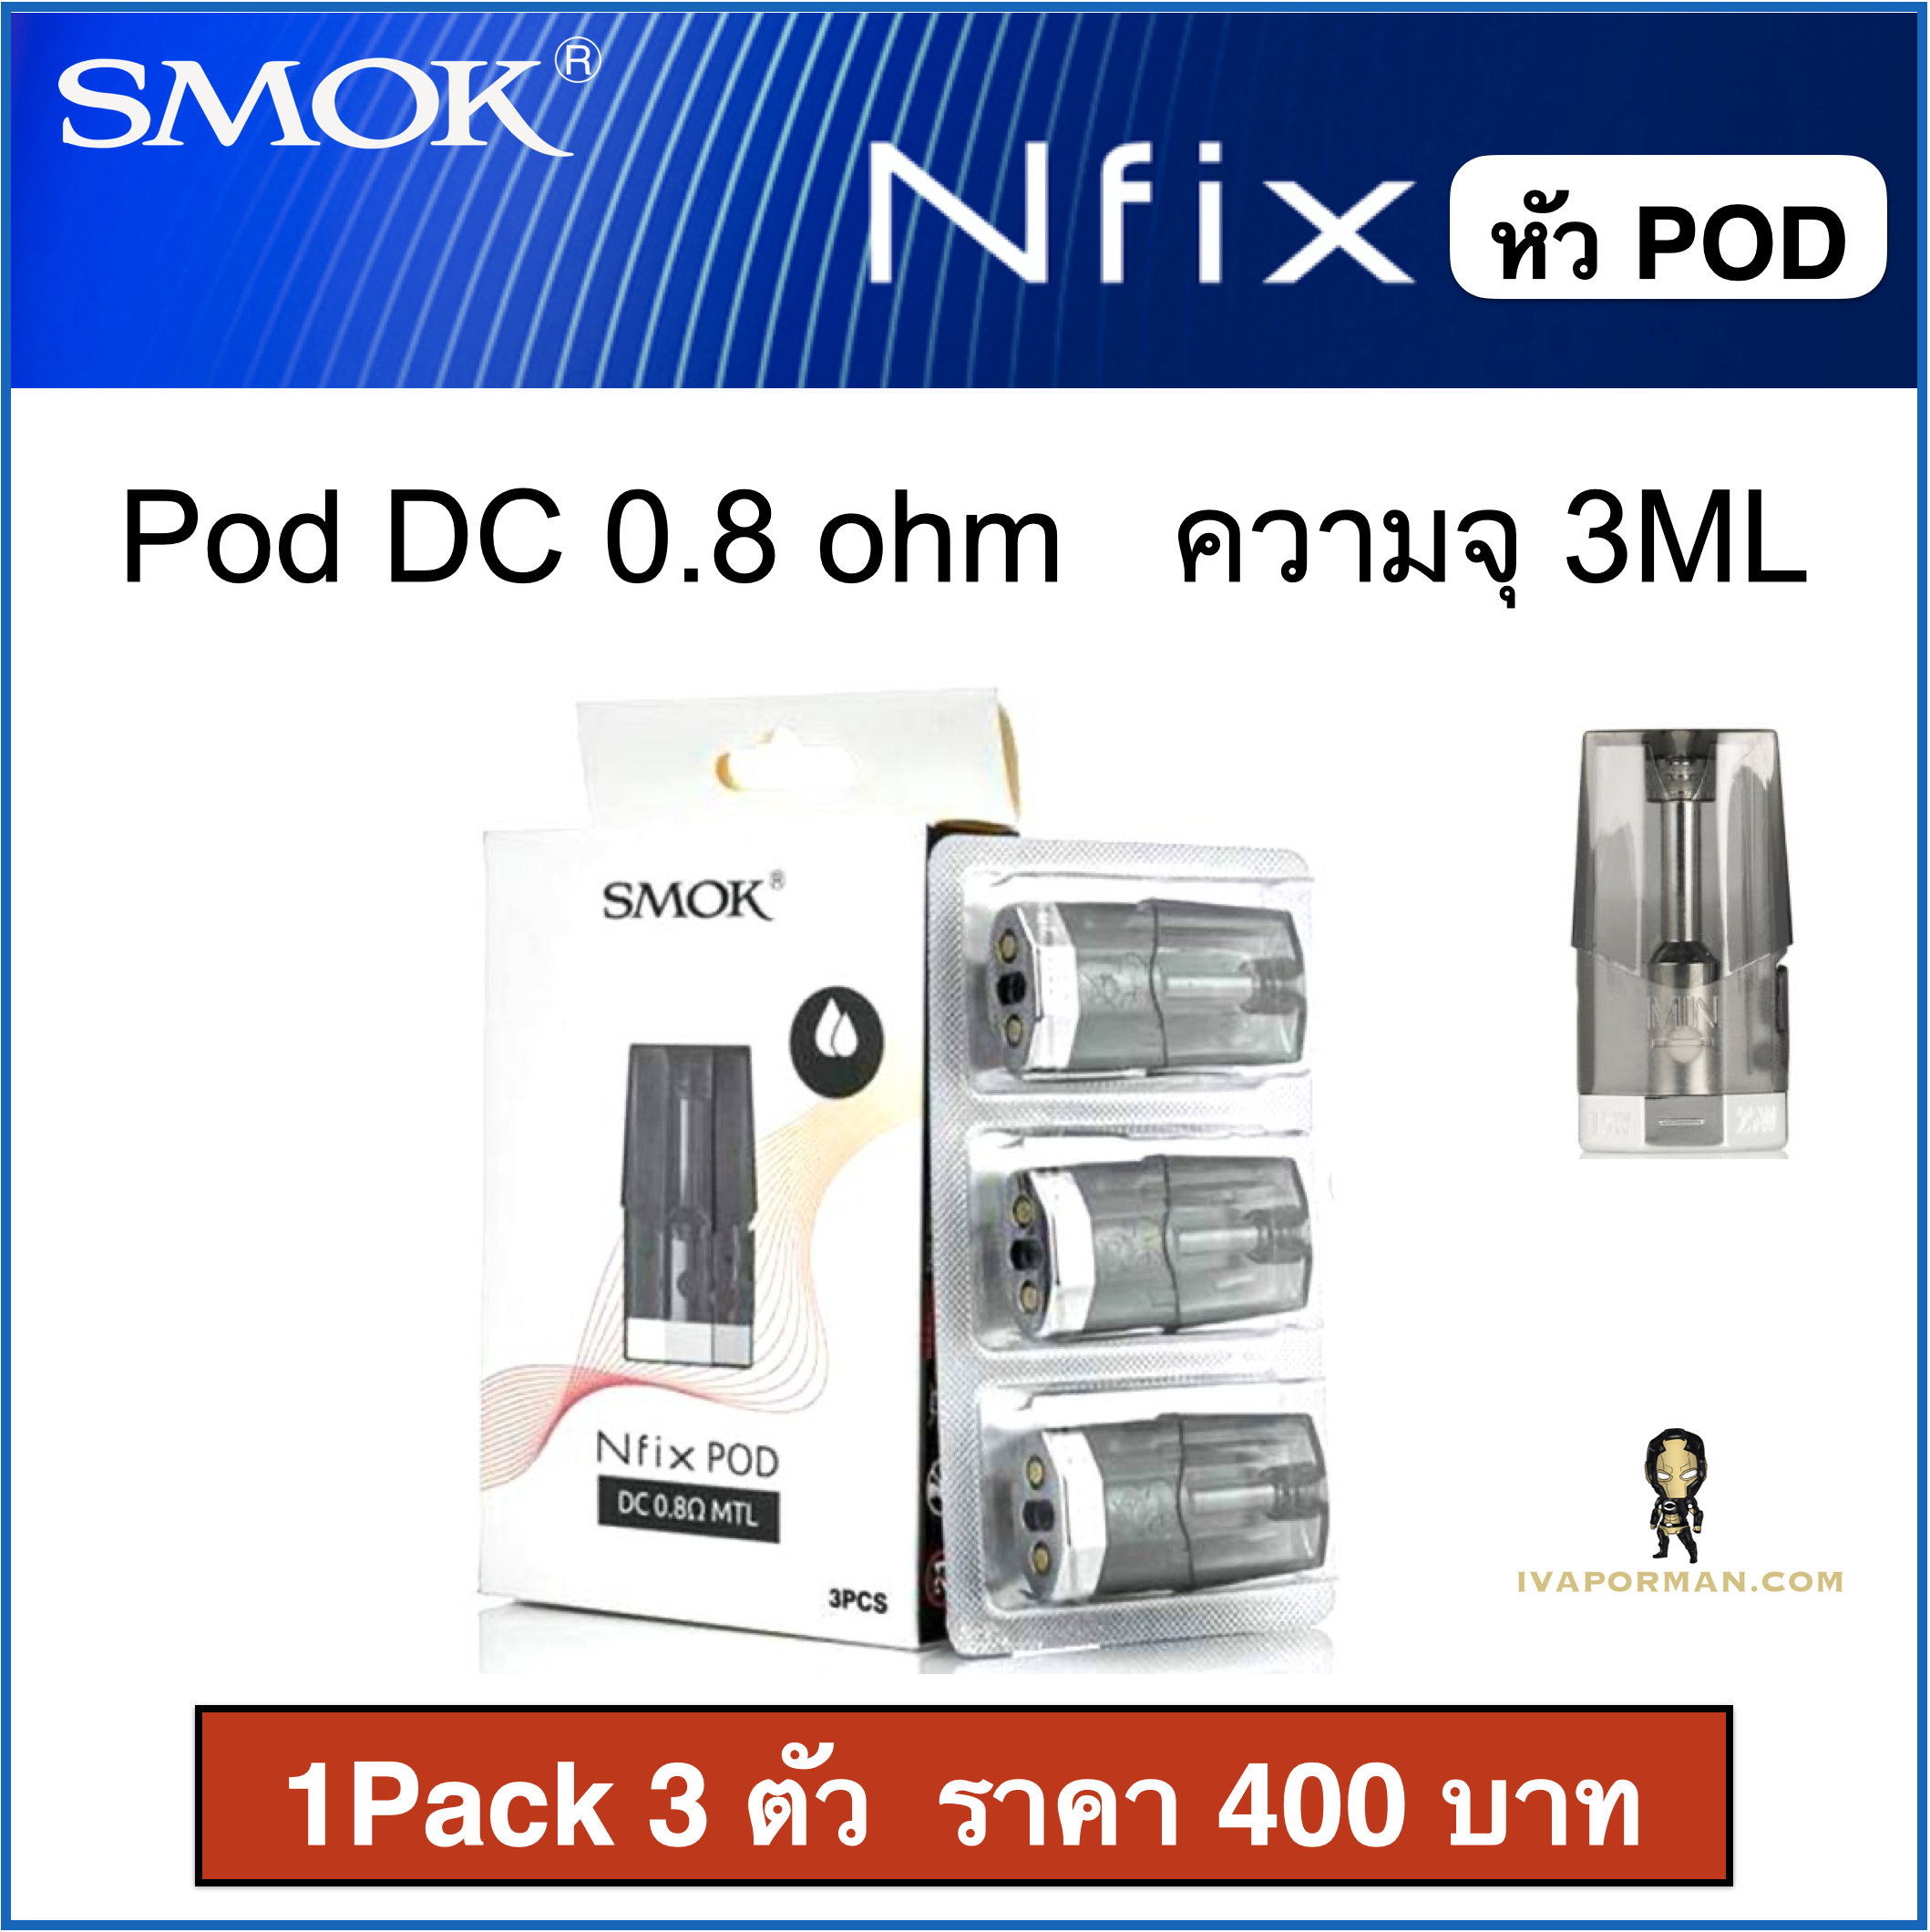 NFIX POD DC 0.8ohm